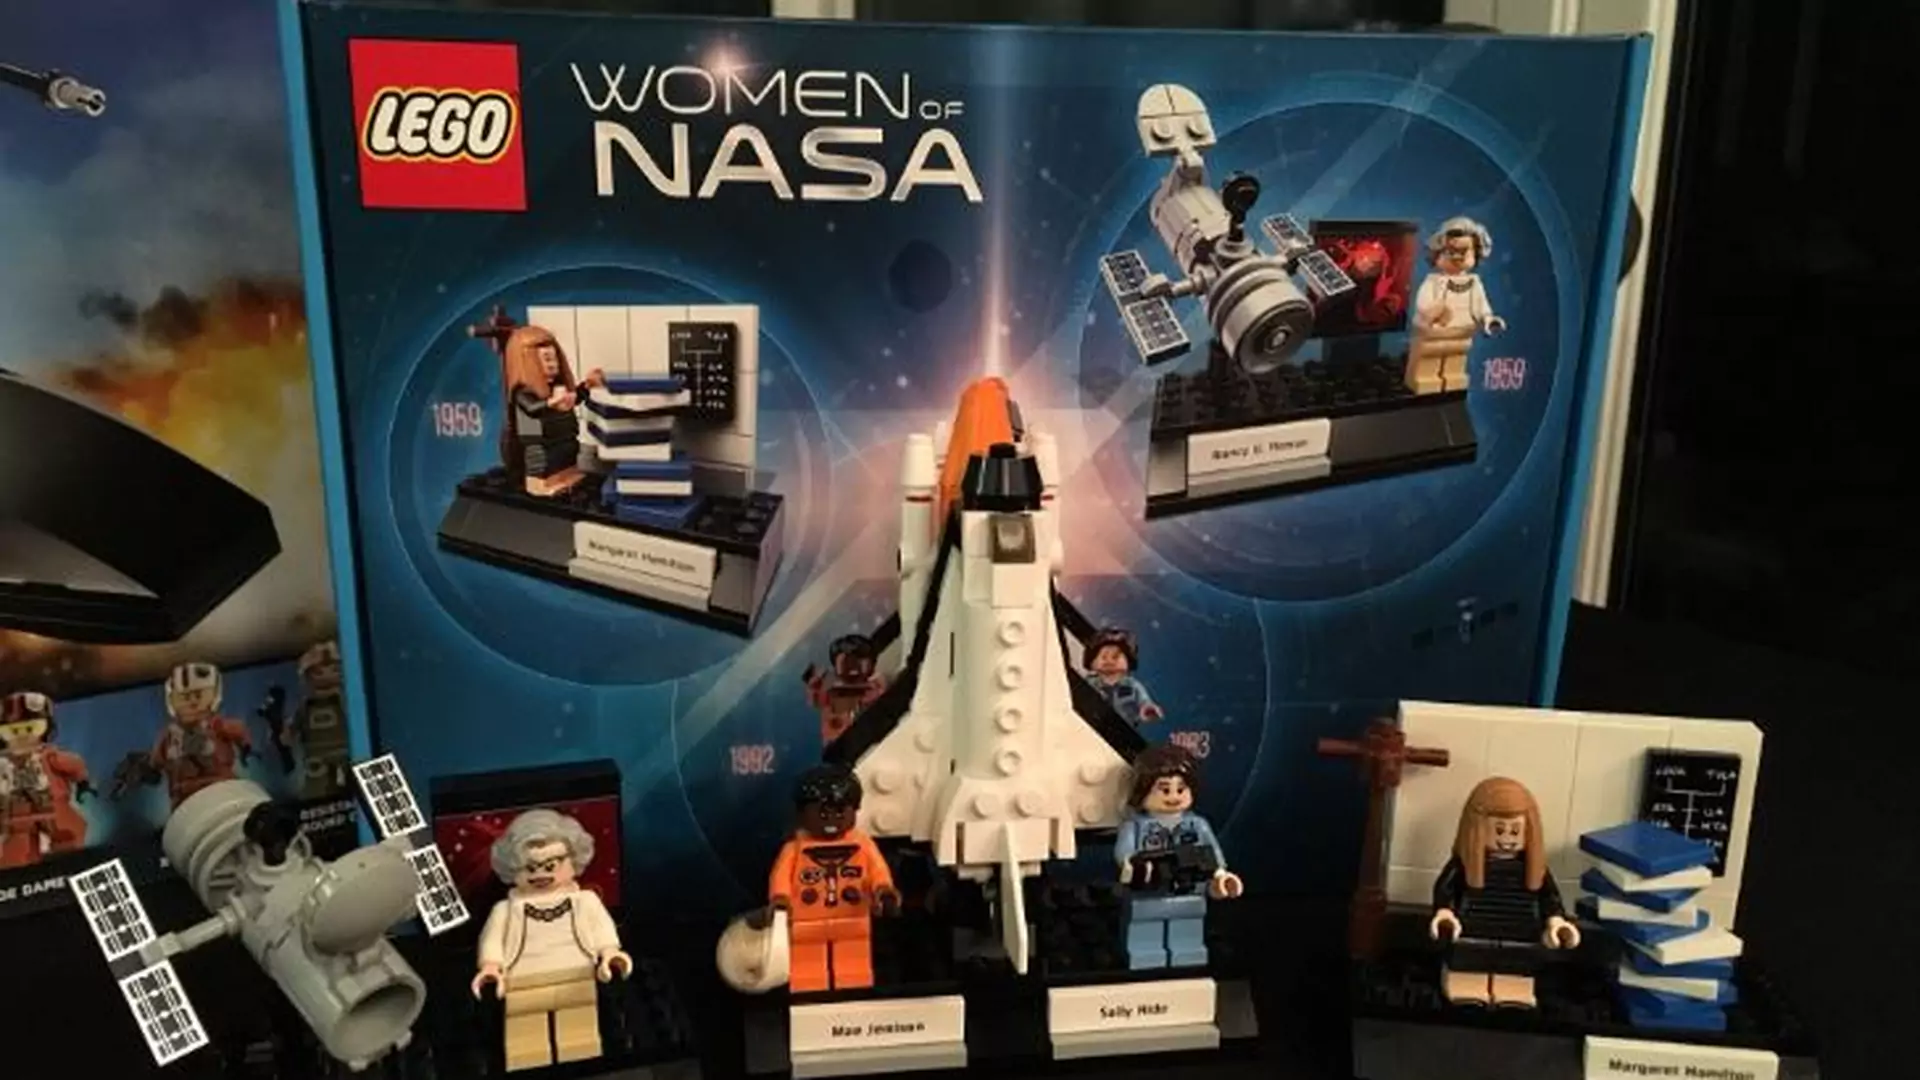 Nowy zestaw LEGO "Kobiety NASA" hitem nie tylko dla dzieci. Znika z półek w mgnieniu oka